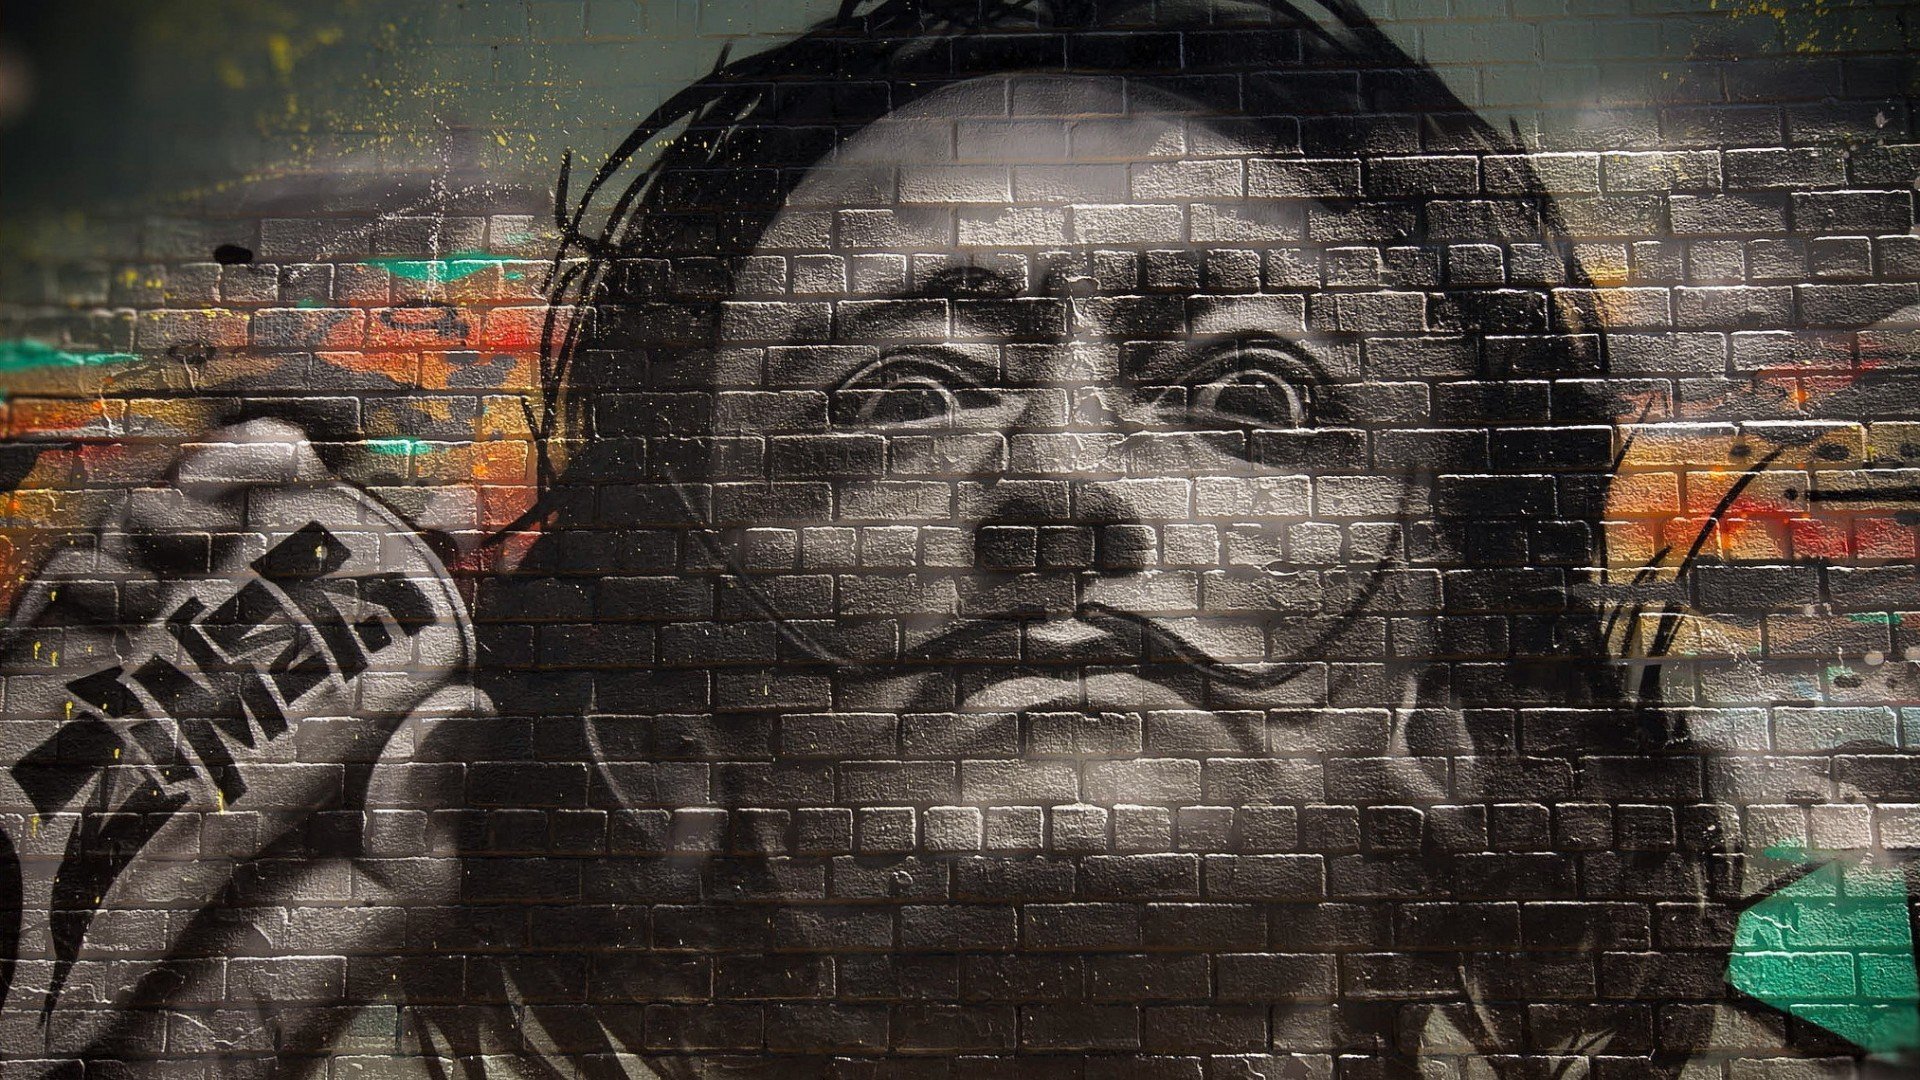 graffiti, Walls, Bricks, Men, Salvador Dalí, Face, Painters, Portrait, Moustache, Selective coloring Wallpaper